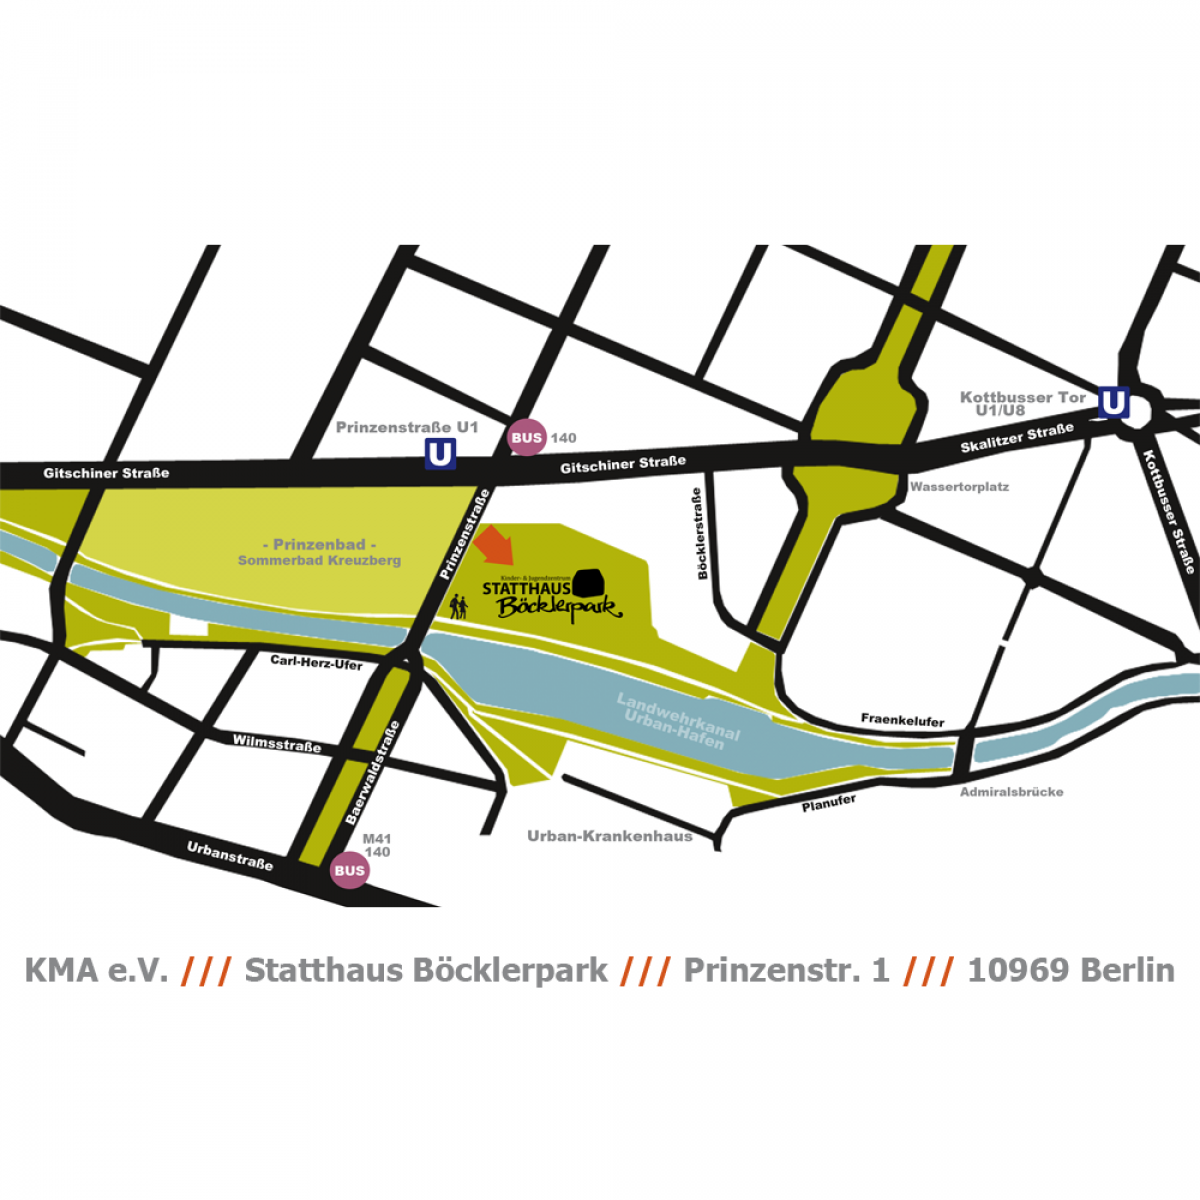 Eine einfache Straßenkarte, die die Gegend um das Statthaus Böcklerpark zeigt.